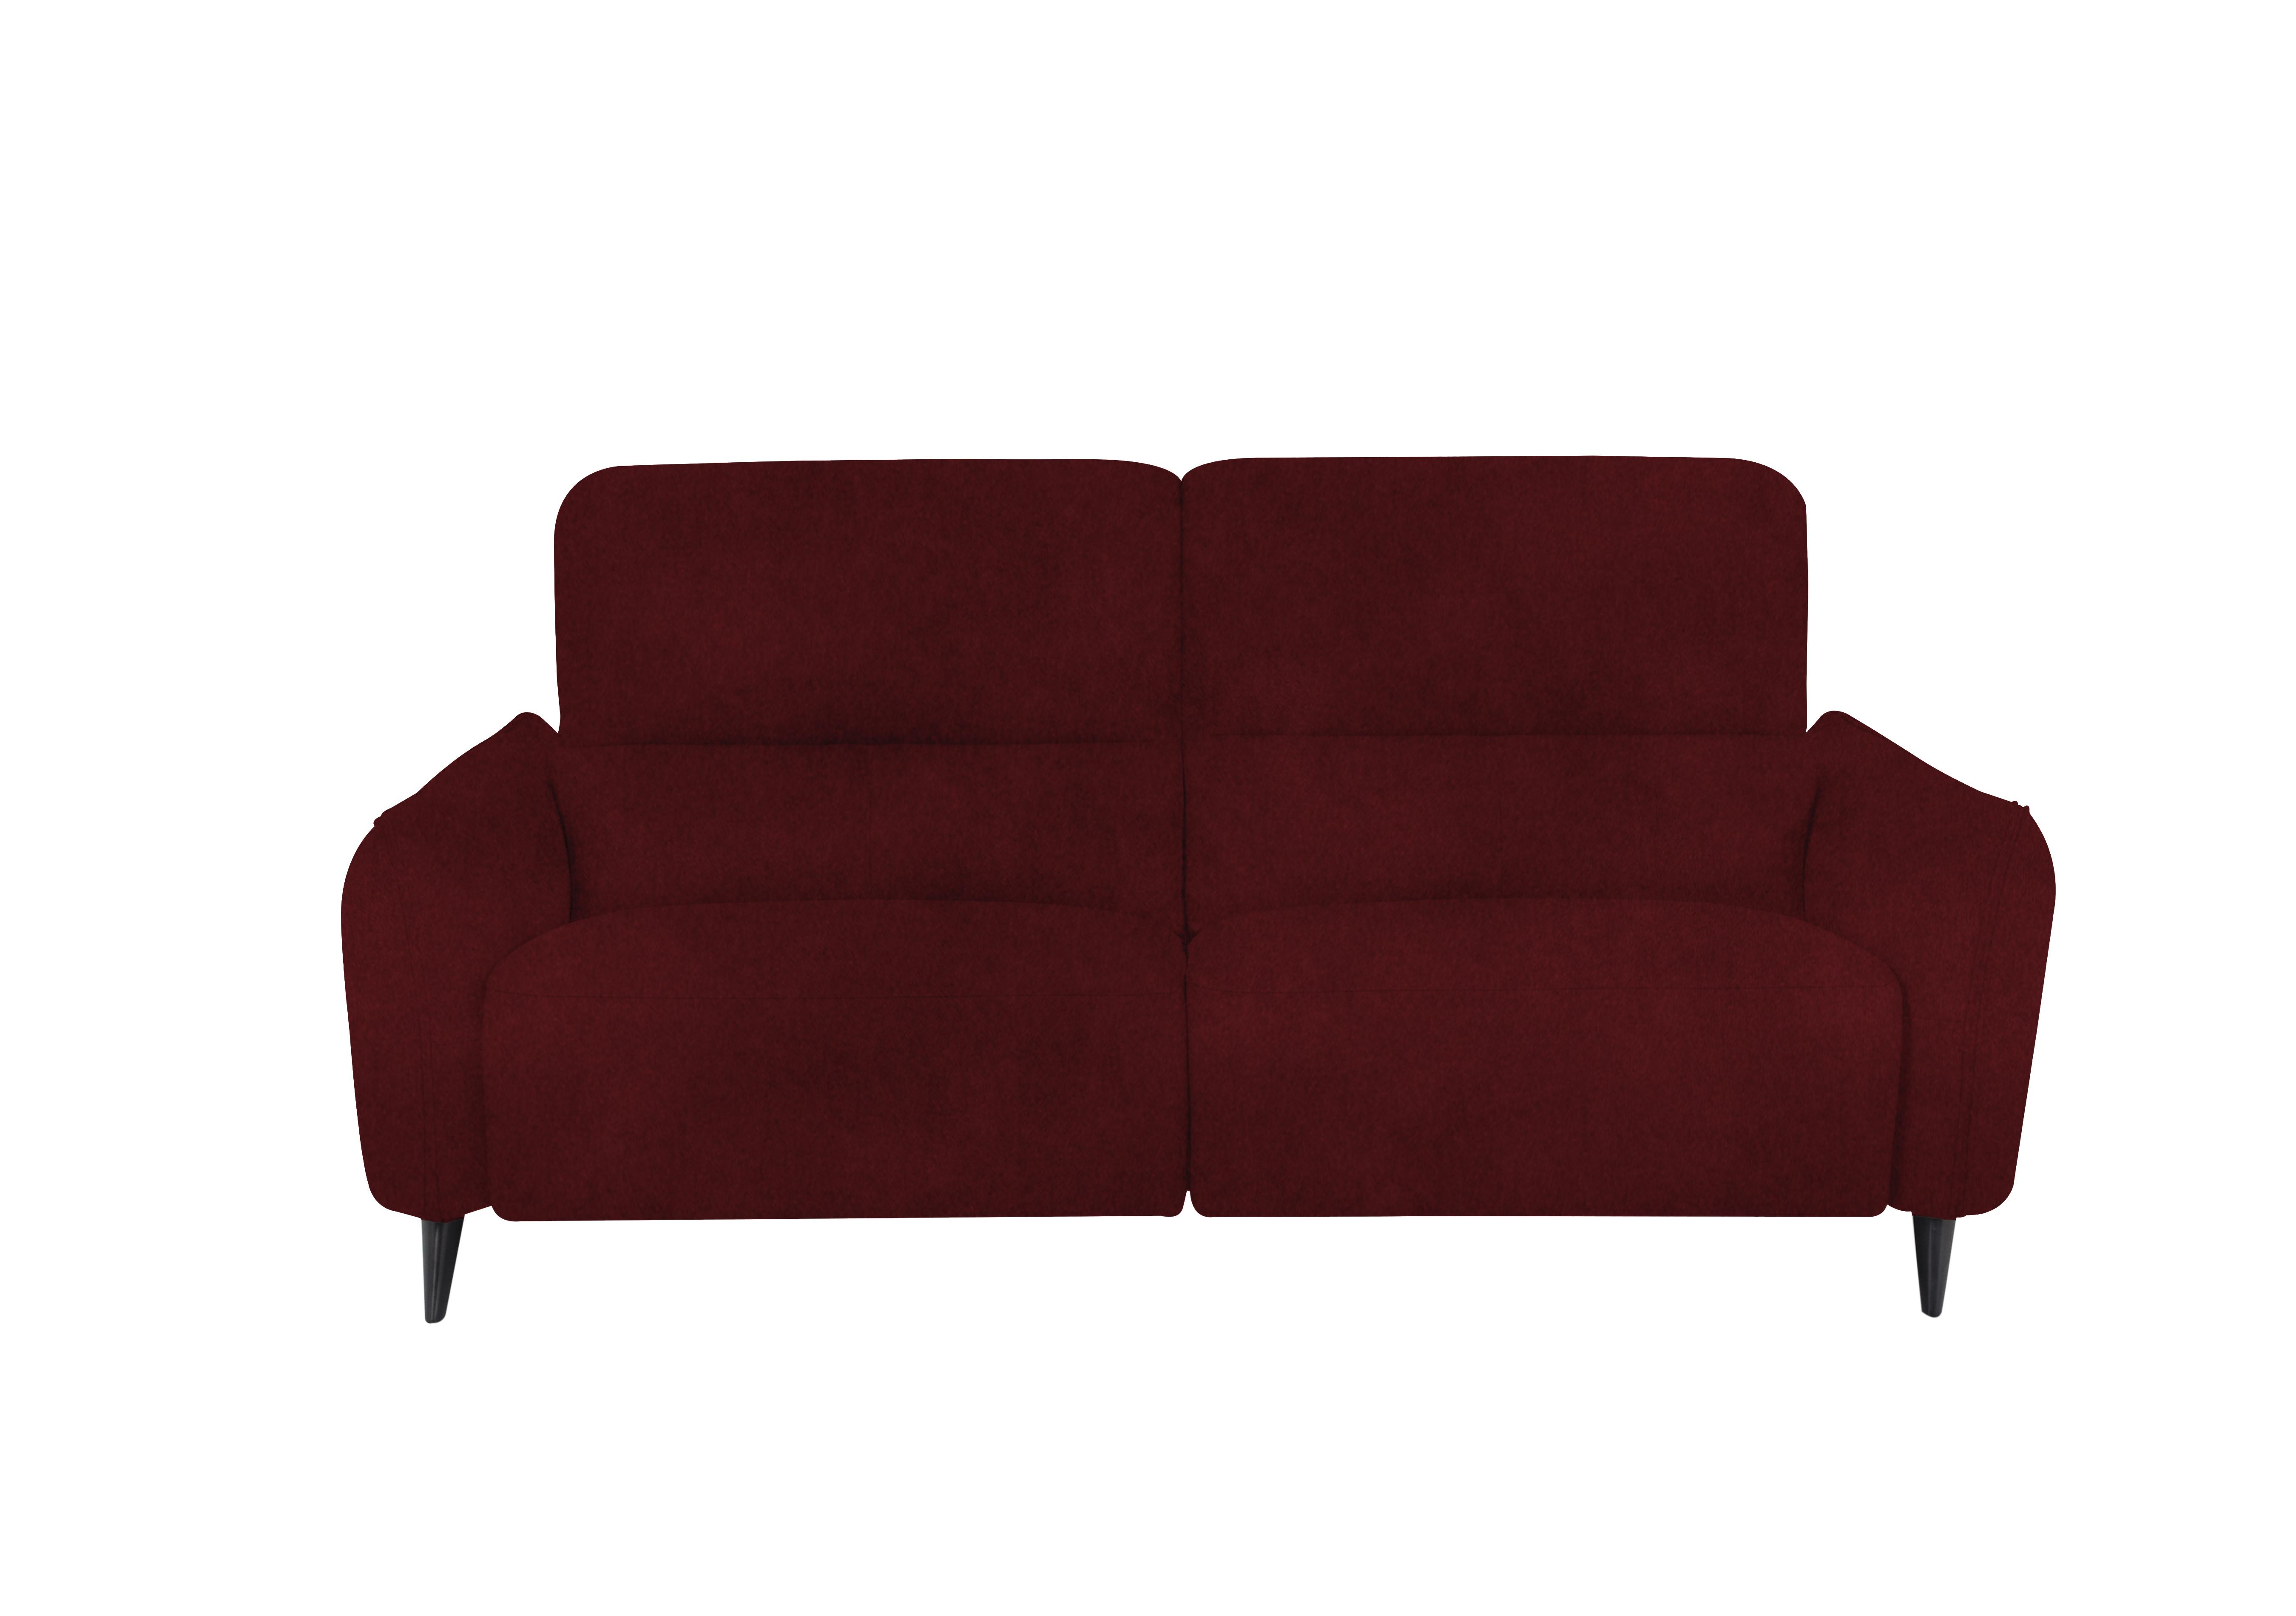 Maddox 3 Seater Fabric Sofa in Fab-Meg-R65 Burgundy on Furniture Village